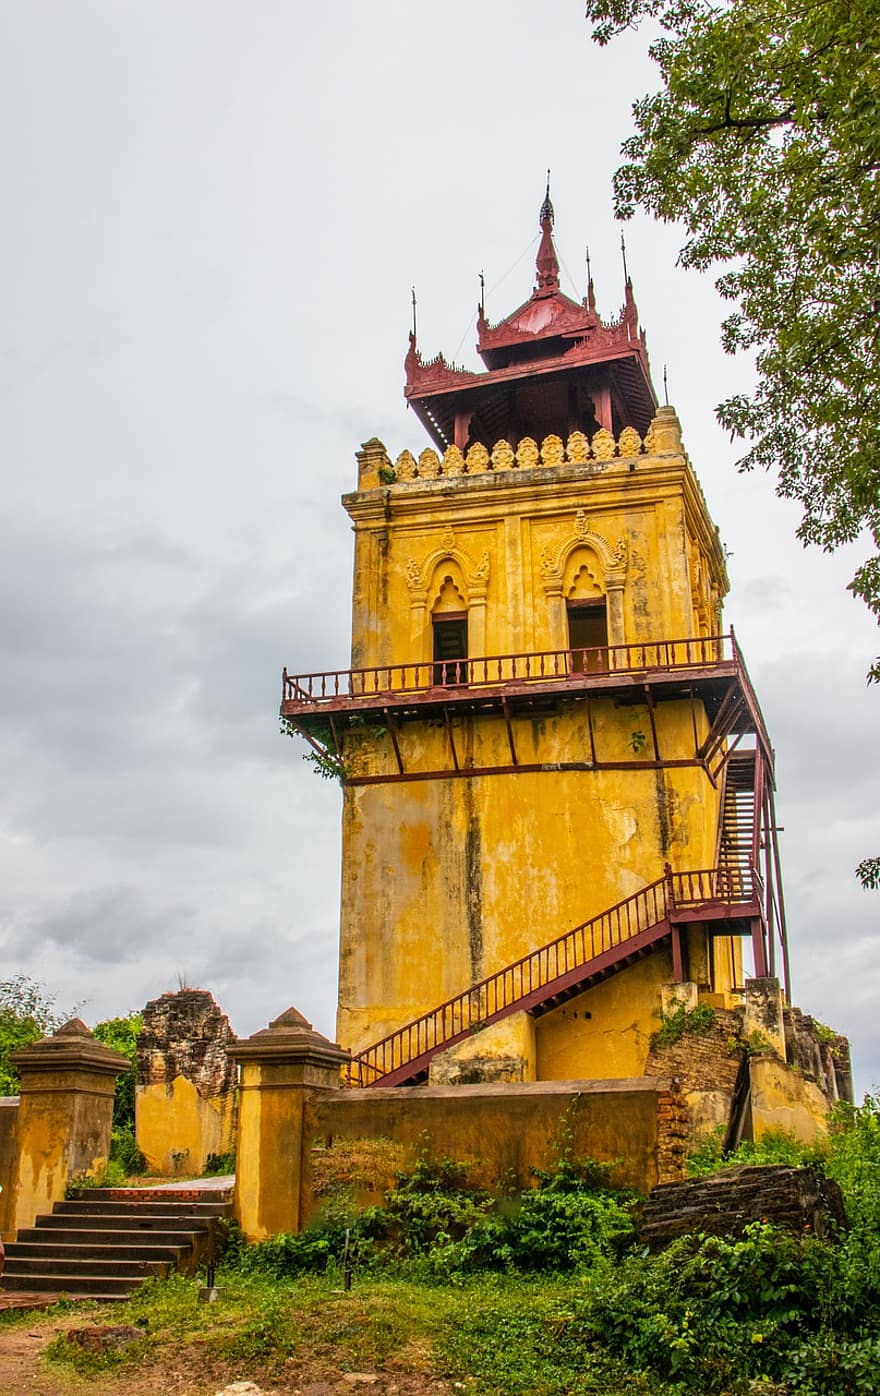 edificio, pagoda, torre de vigilancia, tradicional, arquitectura, mingun, myanmar, mandalay, birmania, paisaje, tradicion